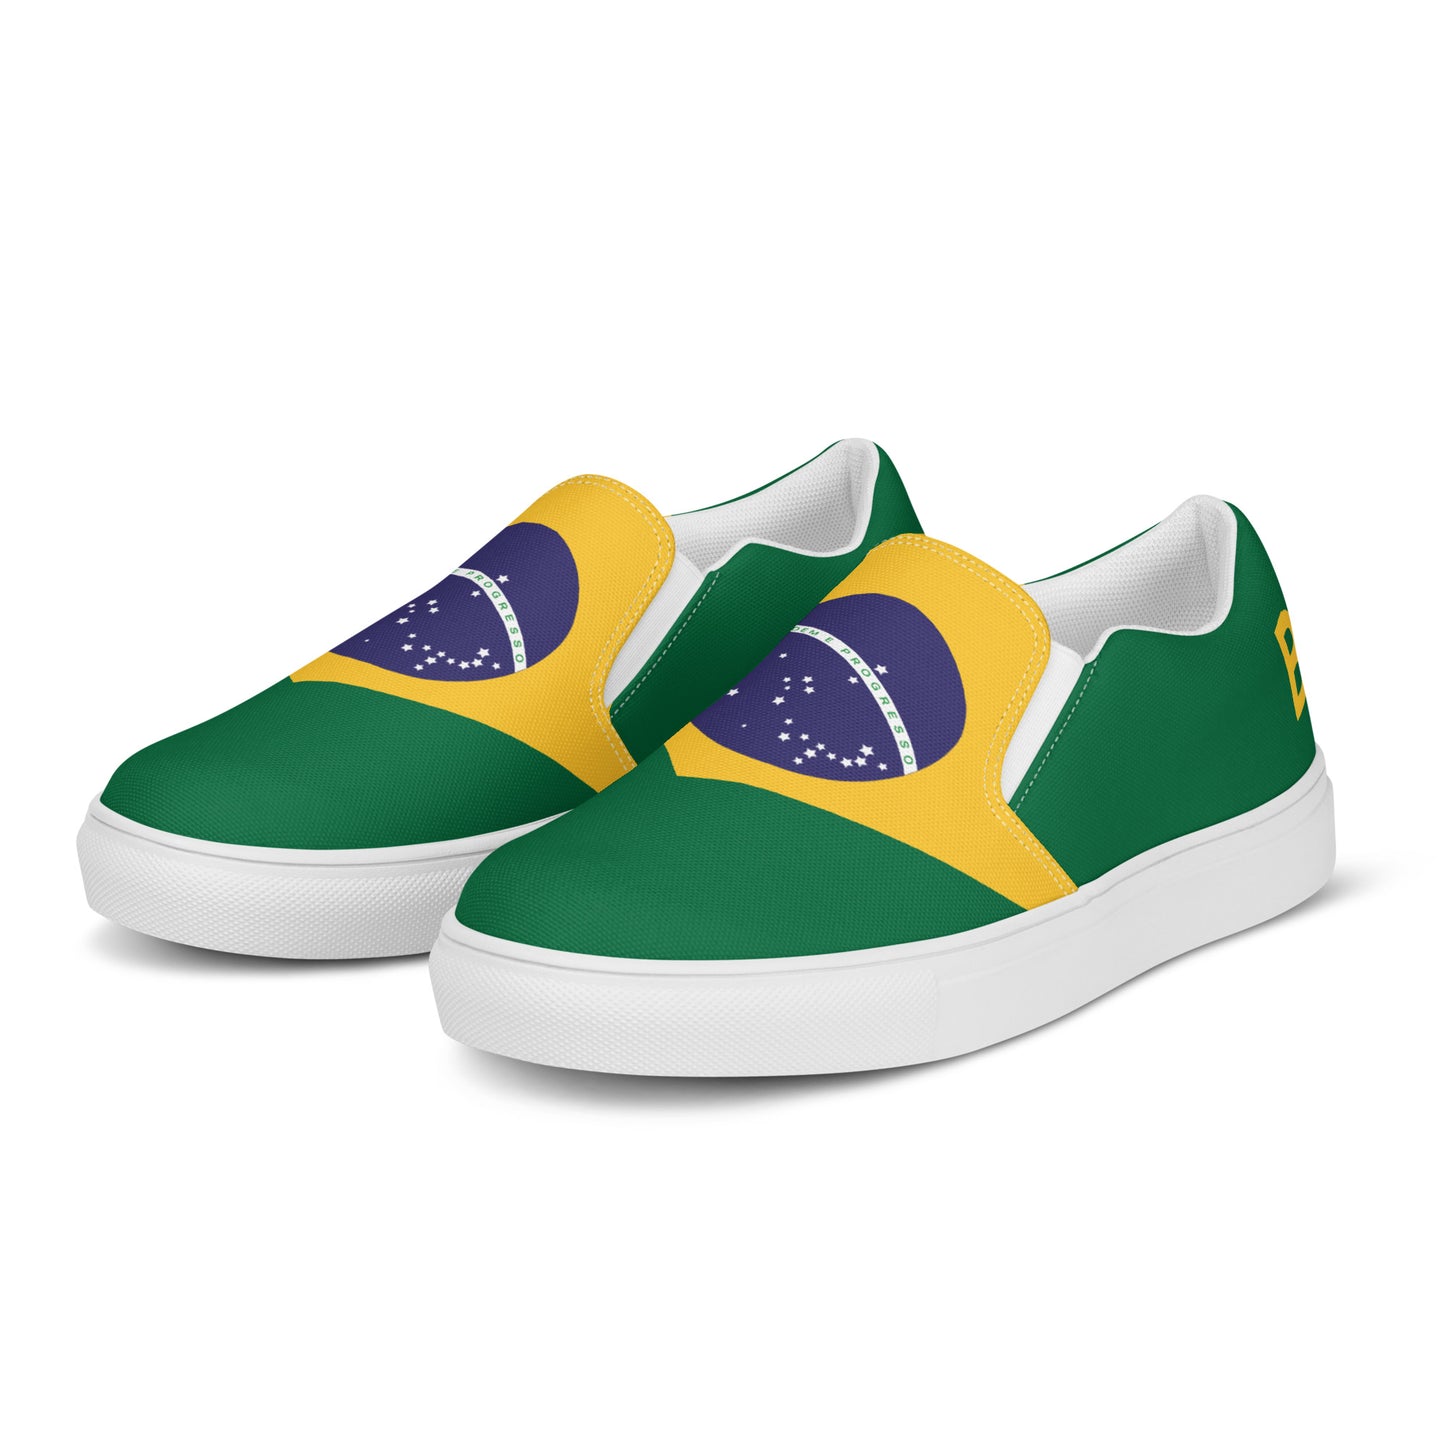 Brasil - Women - Bandera - Slip-on shoes